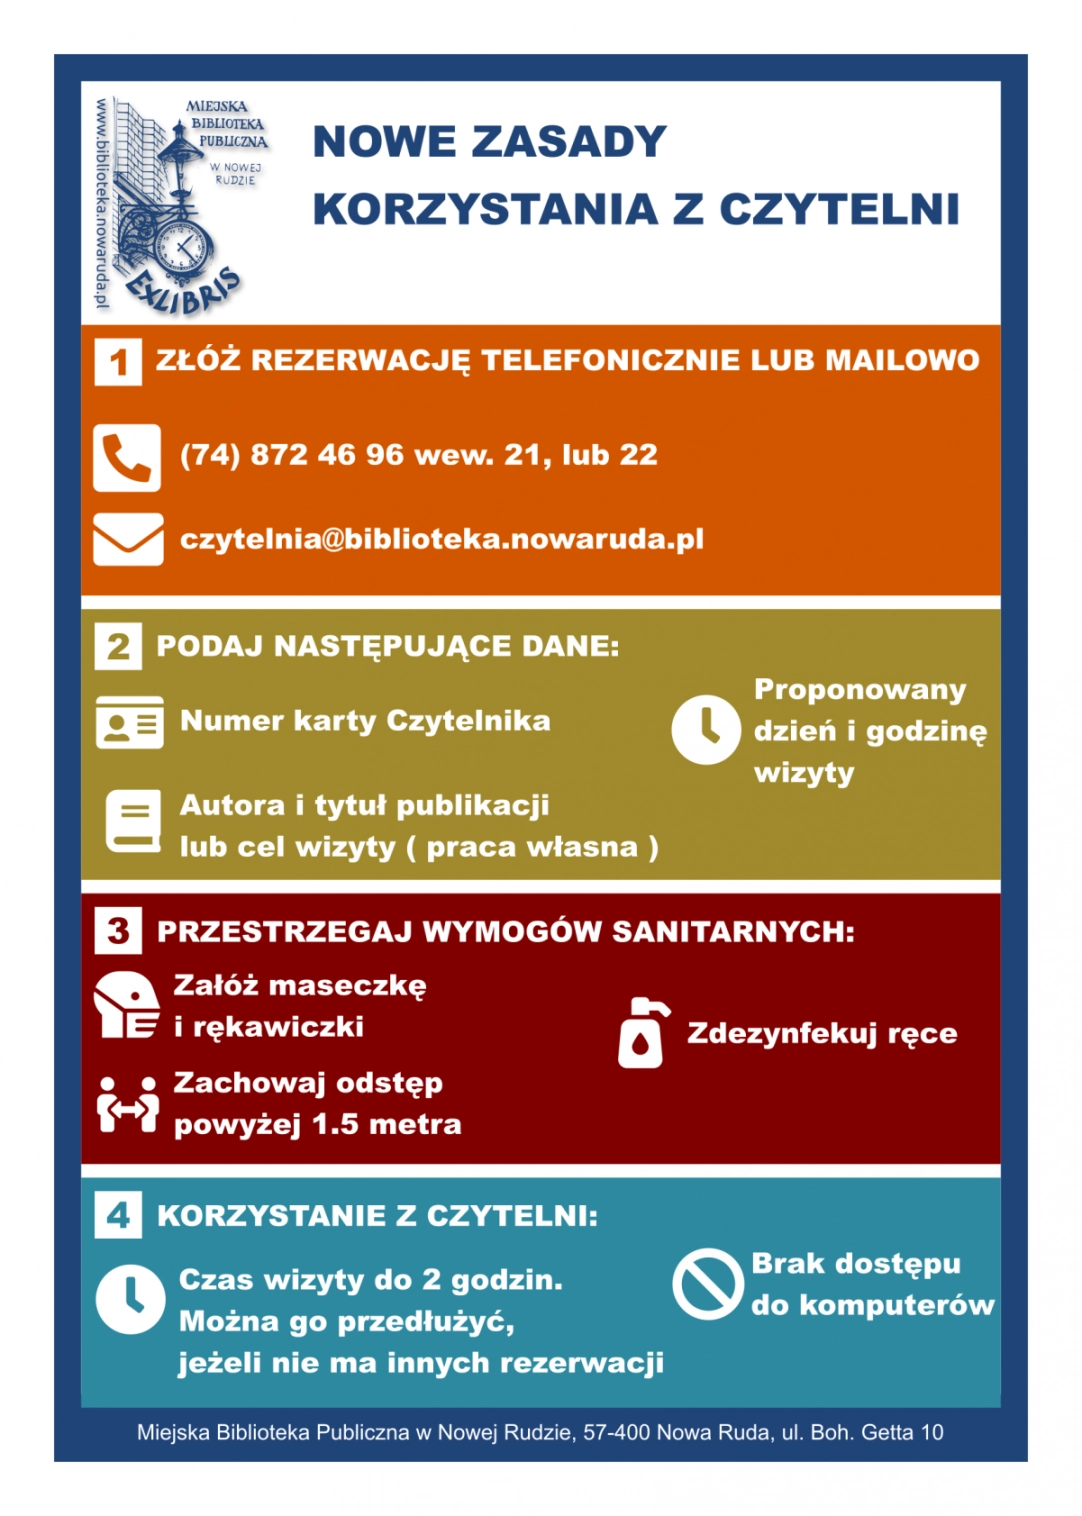 Infografika prezentująca zasady korzystania z czytelni w okresie pandemii COVID-19 - powiększenie